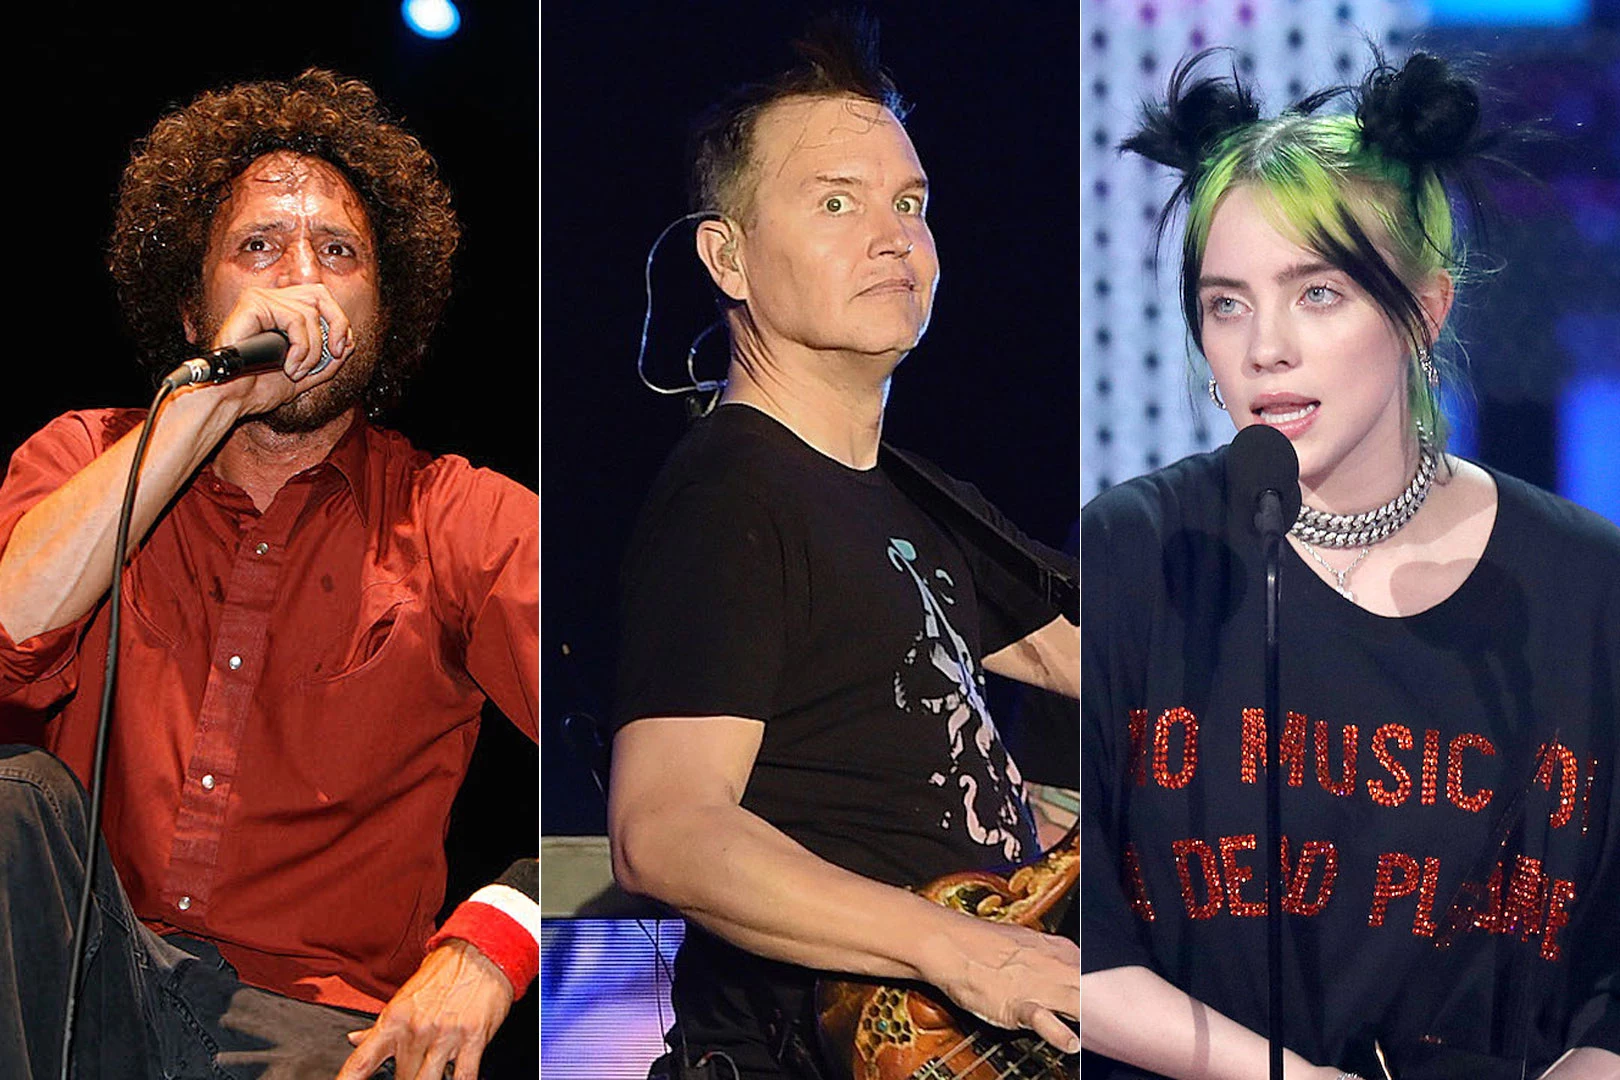 RATM, Blink-182, Billie Eilish Lead 2020 Firefly Festival Lineup